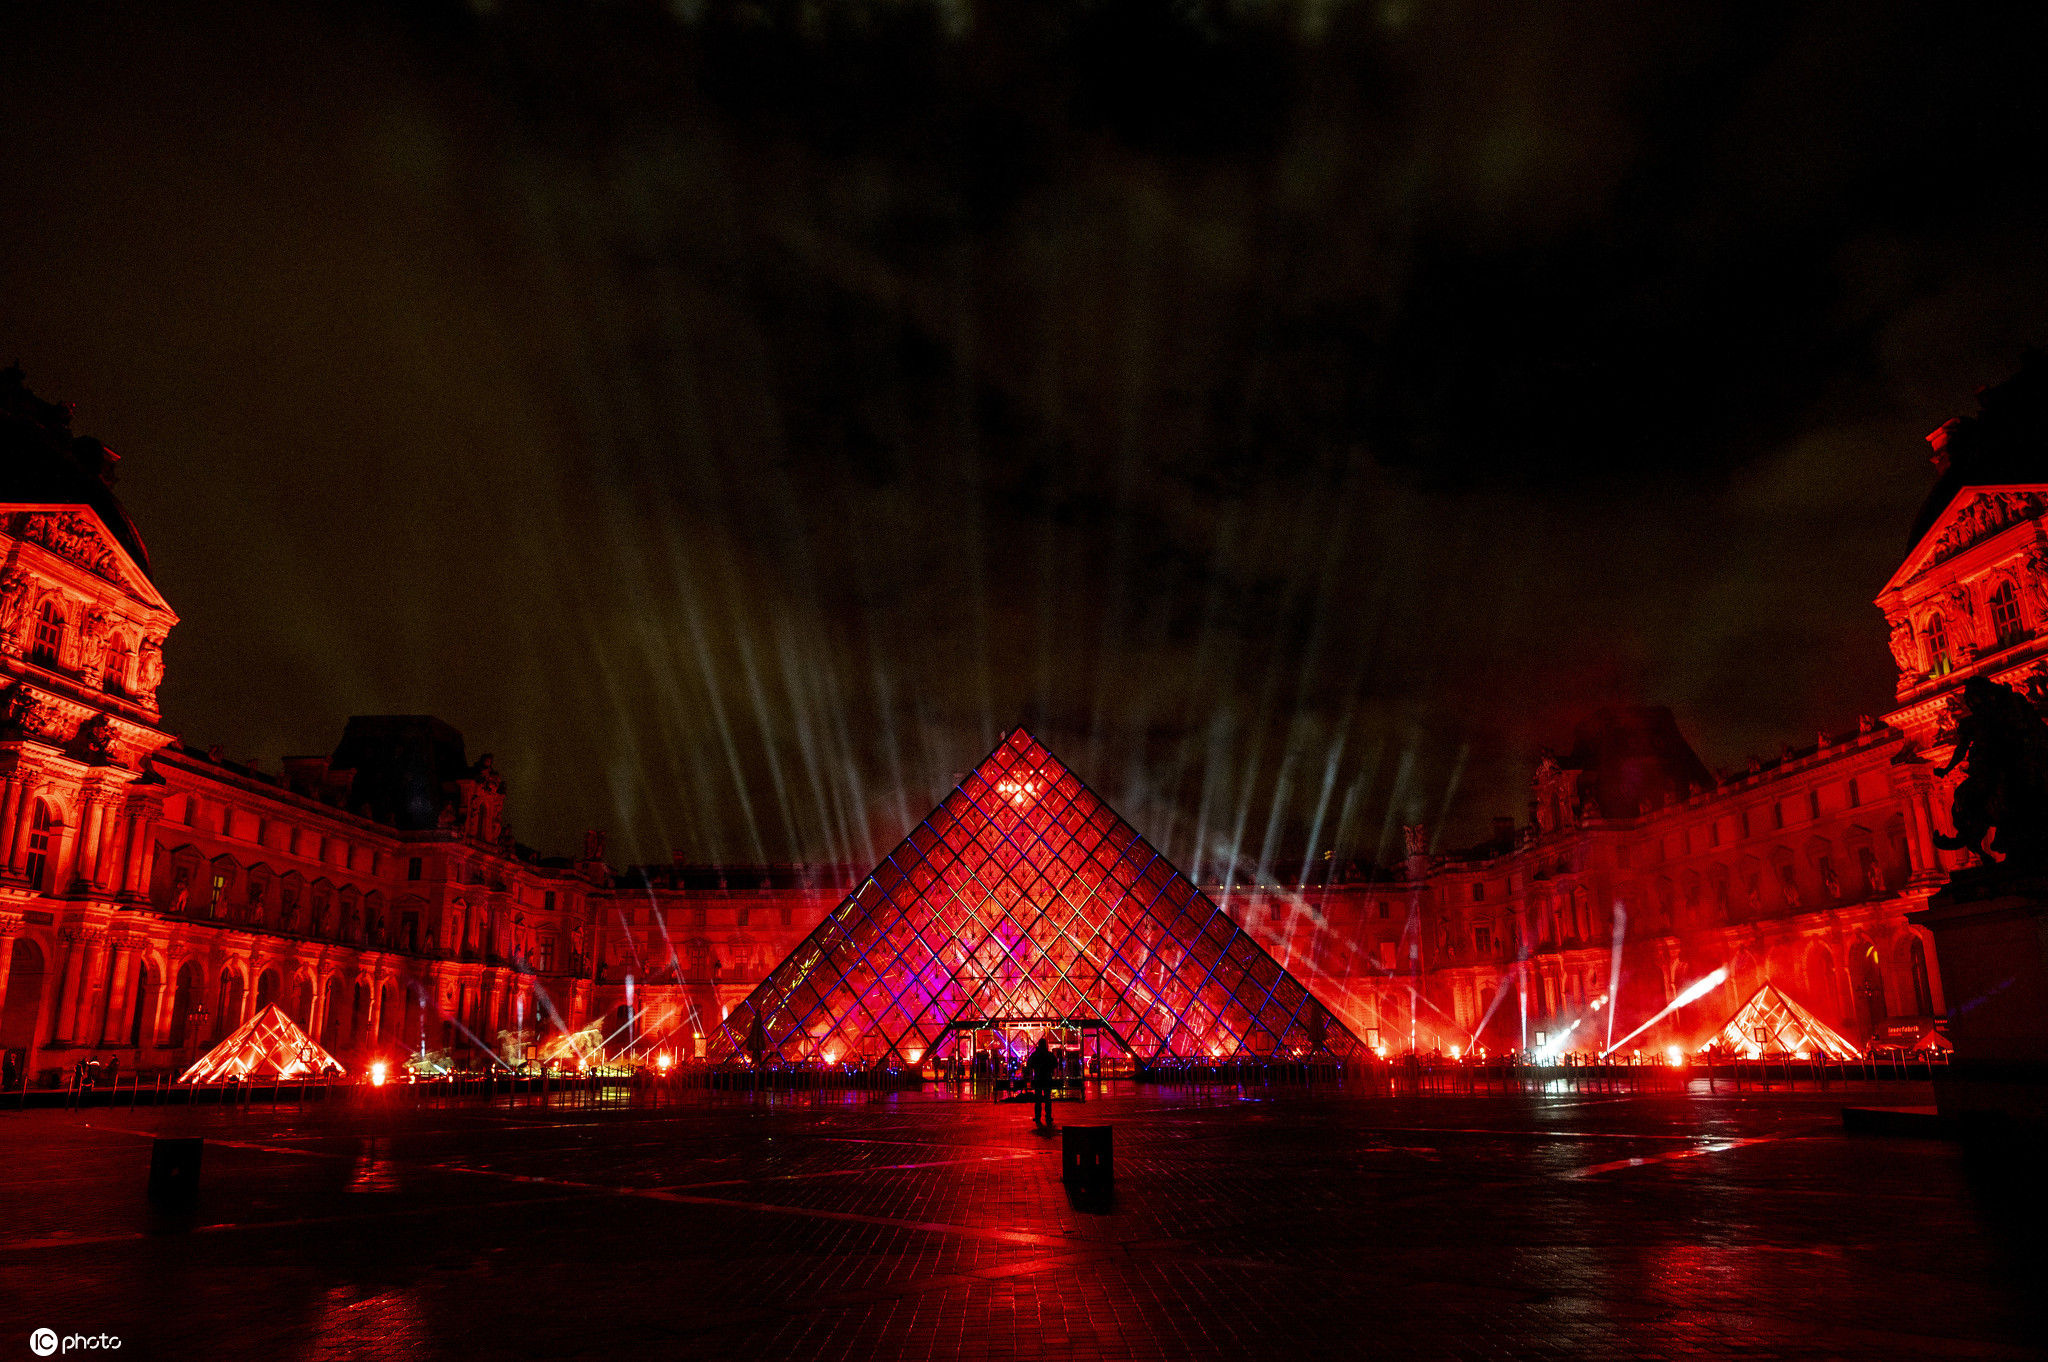 五光十色绚烂夺目!法国卢浮宫举行迎新年亮灯活动